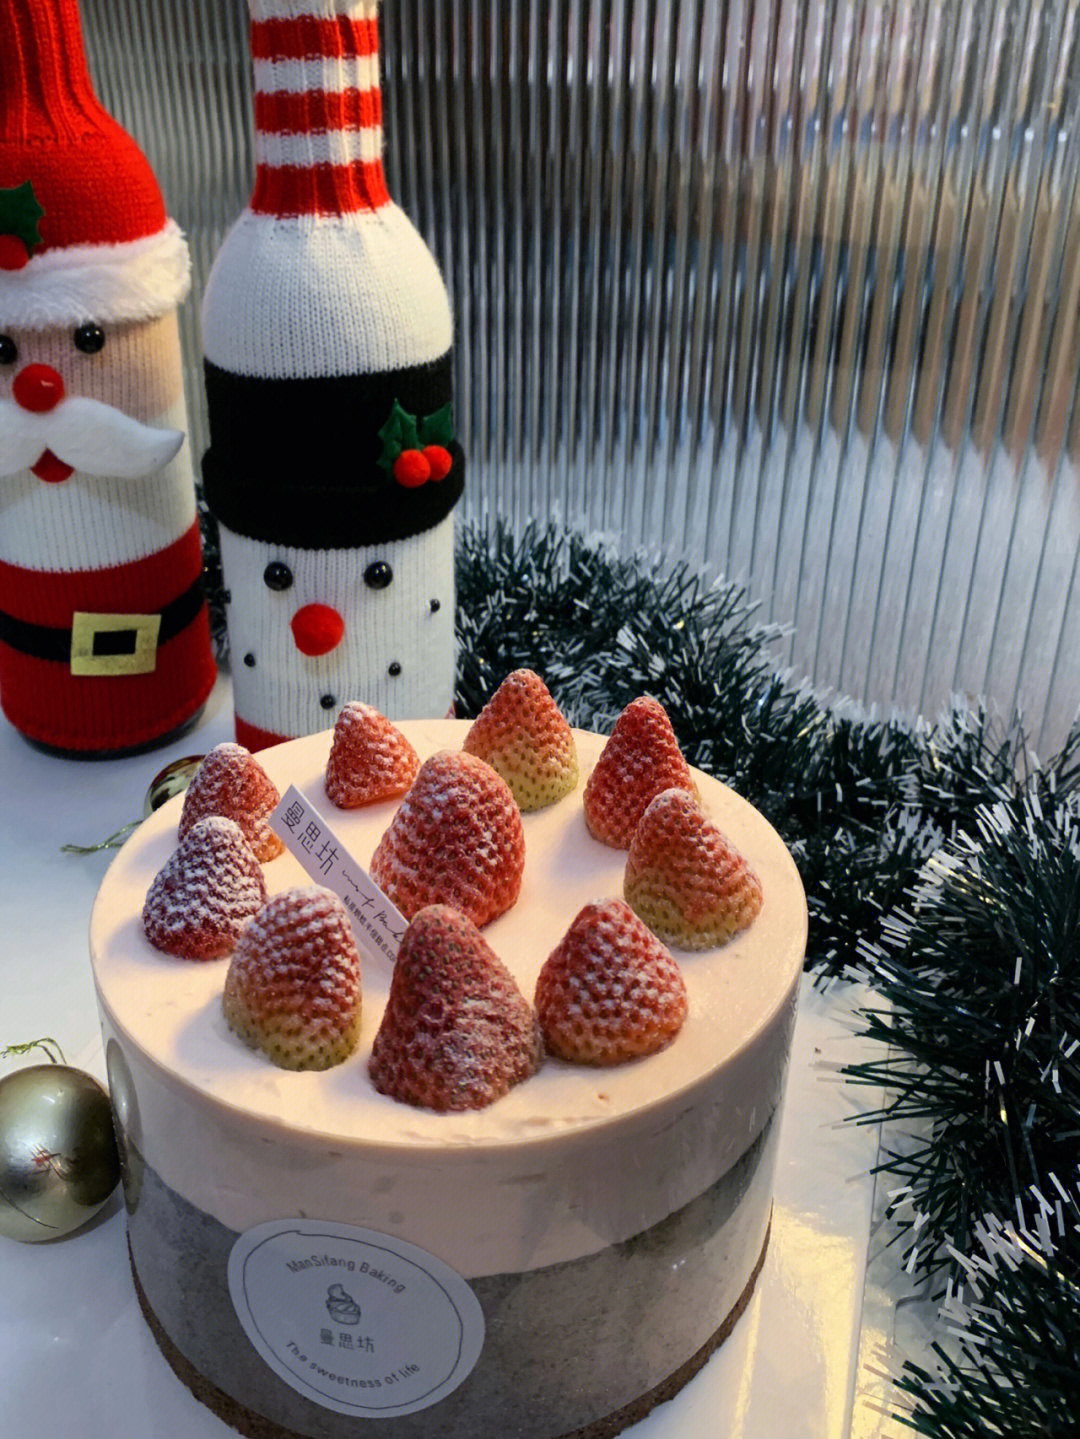 草莓流心蛋糕 91可可蛋糕胚搭配特调草莓奶油 中间是草莓啵啵芝士